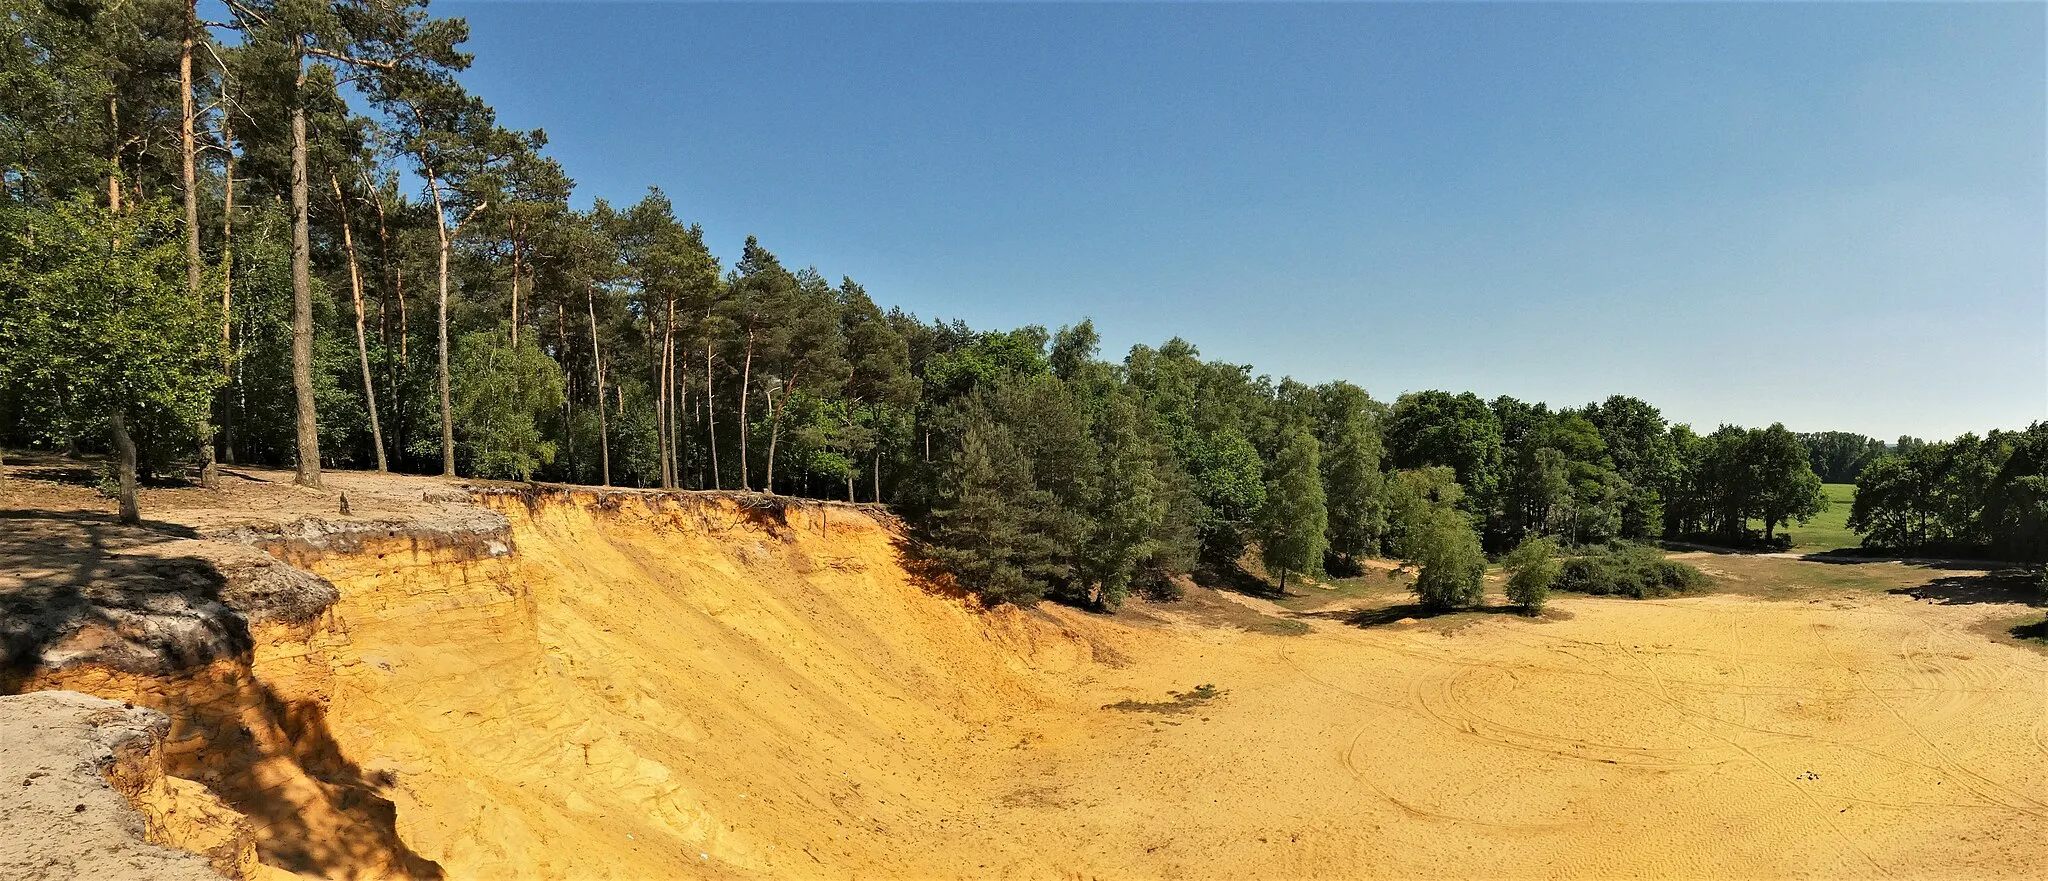 Photo showing: Sandsteinaufschluss im Landschaftsschutzgebiet Hünsberg-Monenberg im Kreis Coesfeld, NRW